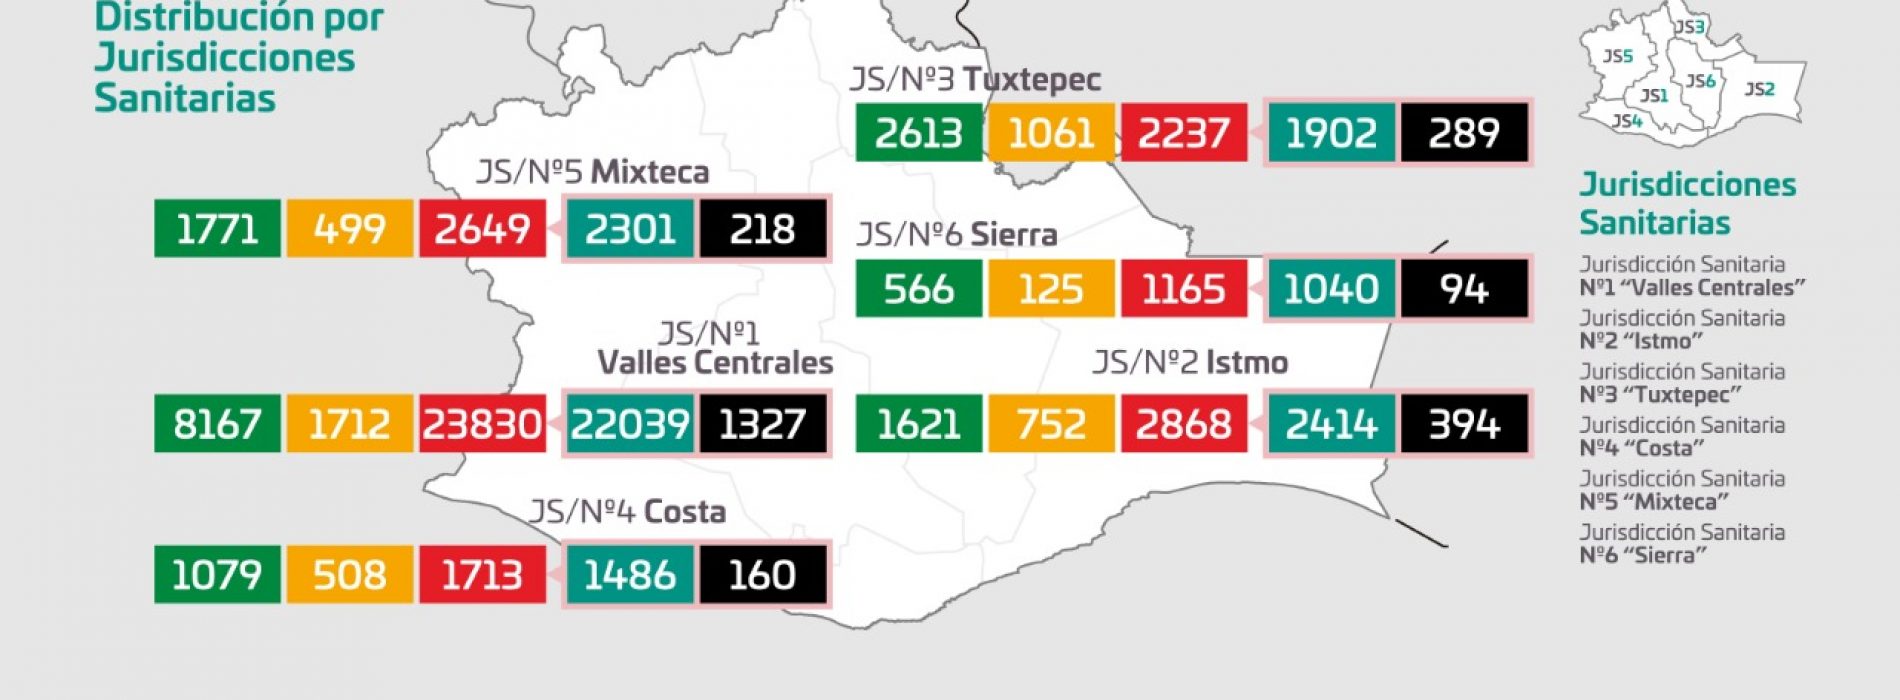 Reporta secto Salud 334 casos nuevos de COVID-19, van 34 mil 462 acumulados en Oaxaca